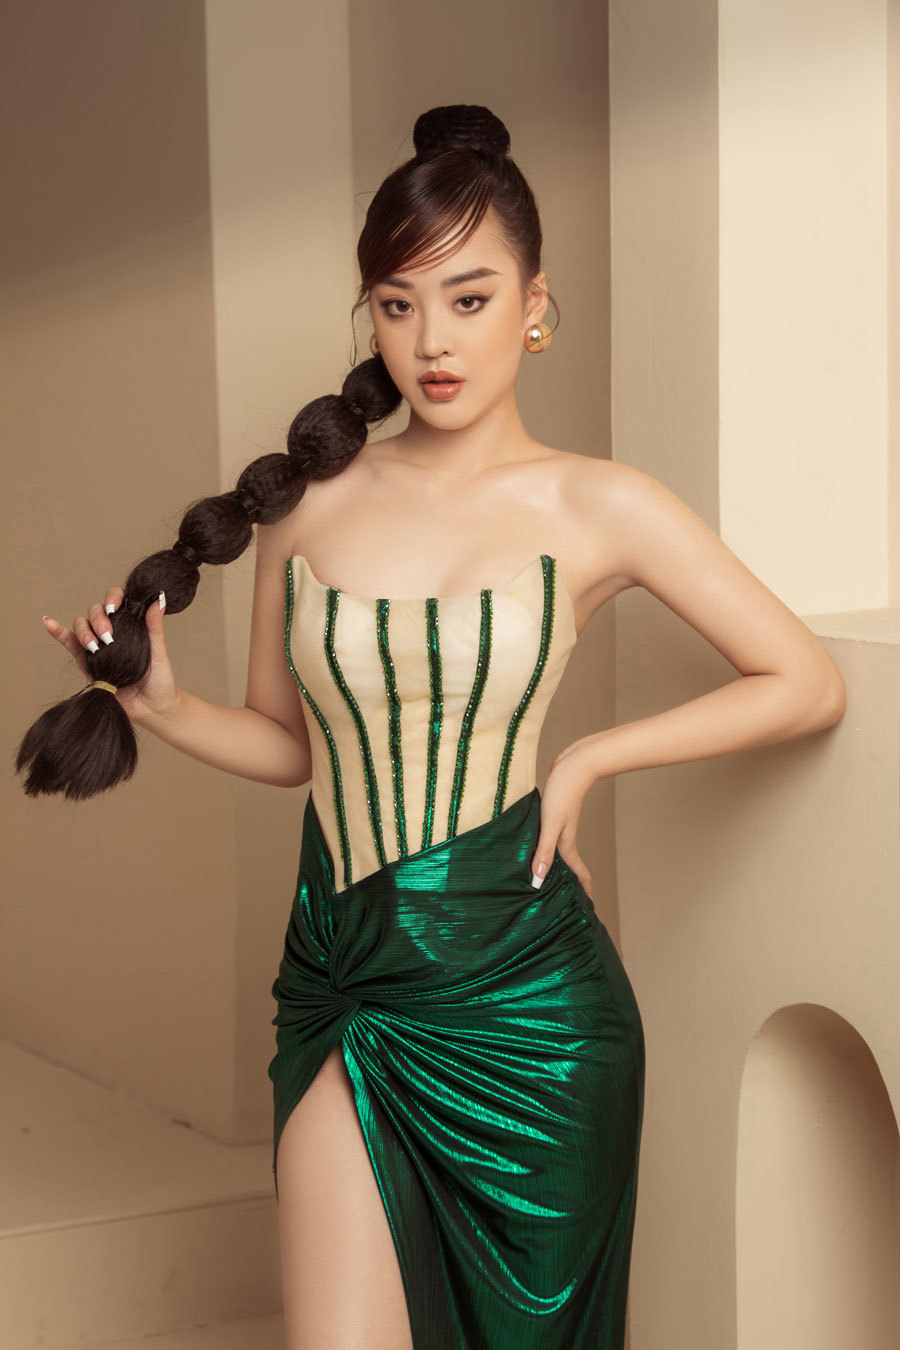 Cuộc sống hiện tại của người đẹp thi hoa hậu nhiều nhất Việt Nam - Ảnh 1.